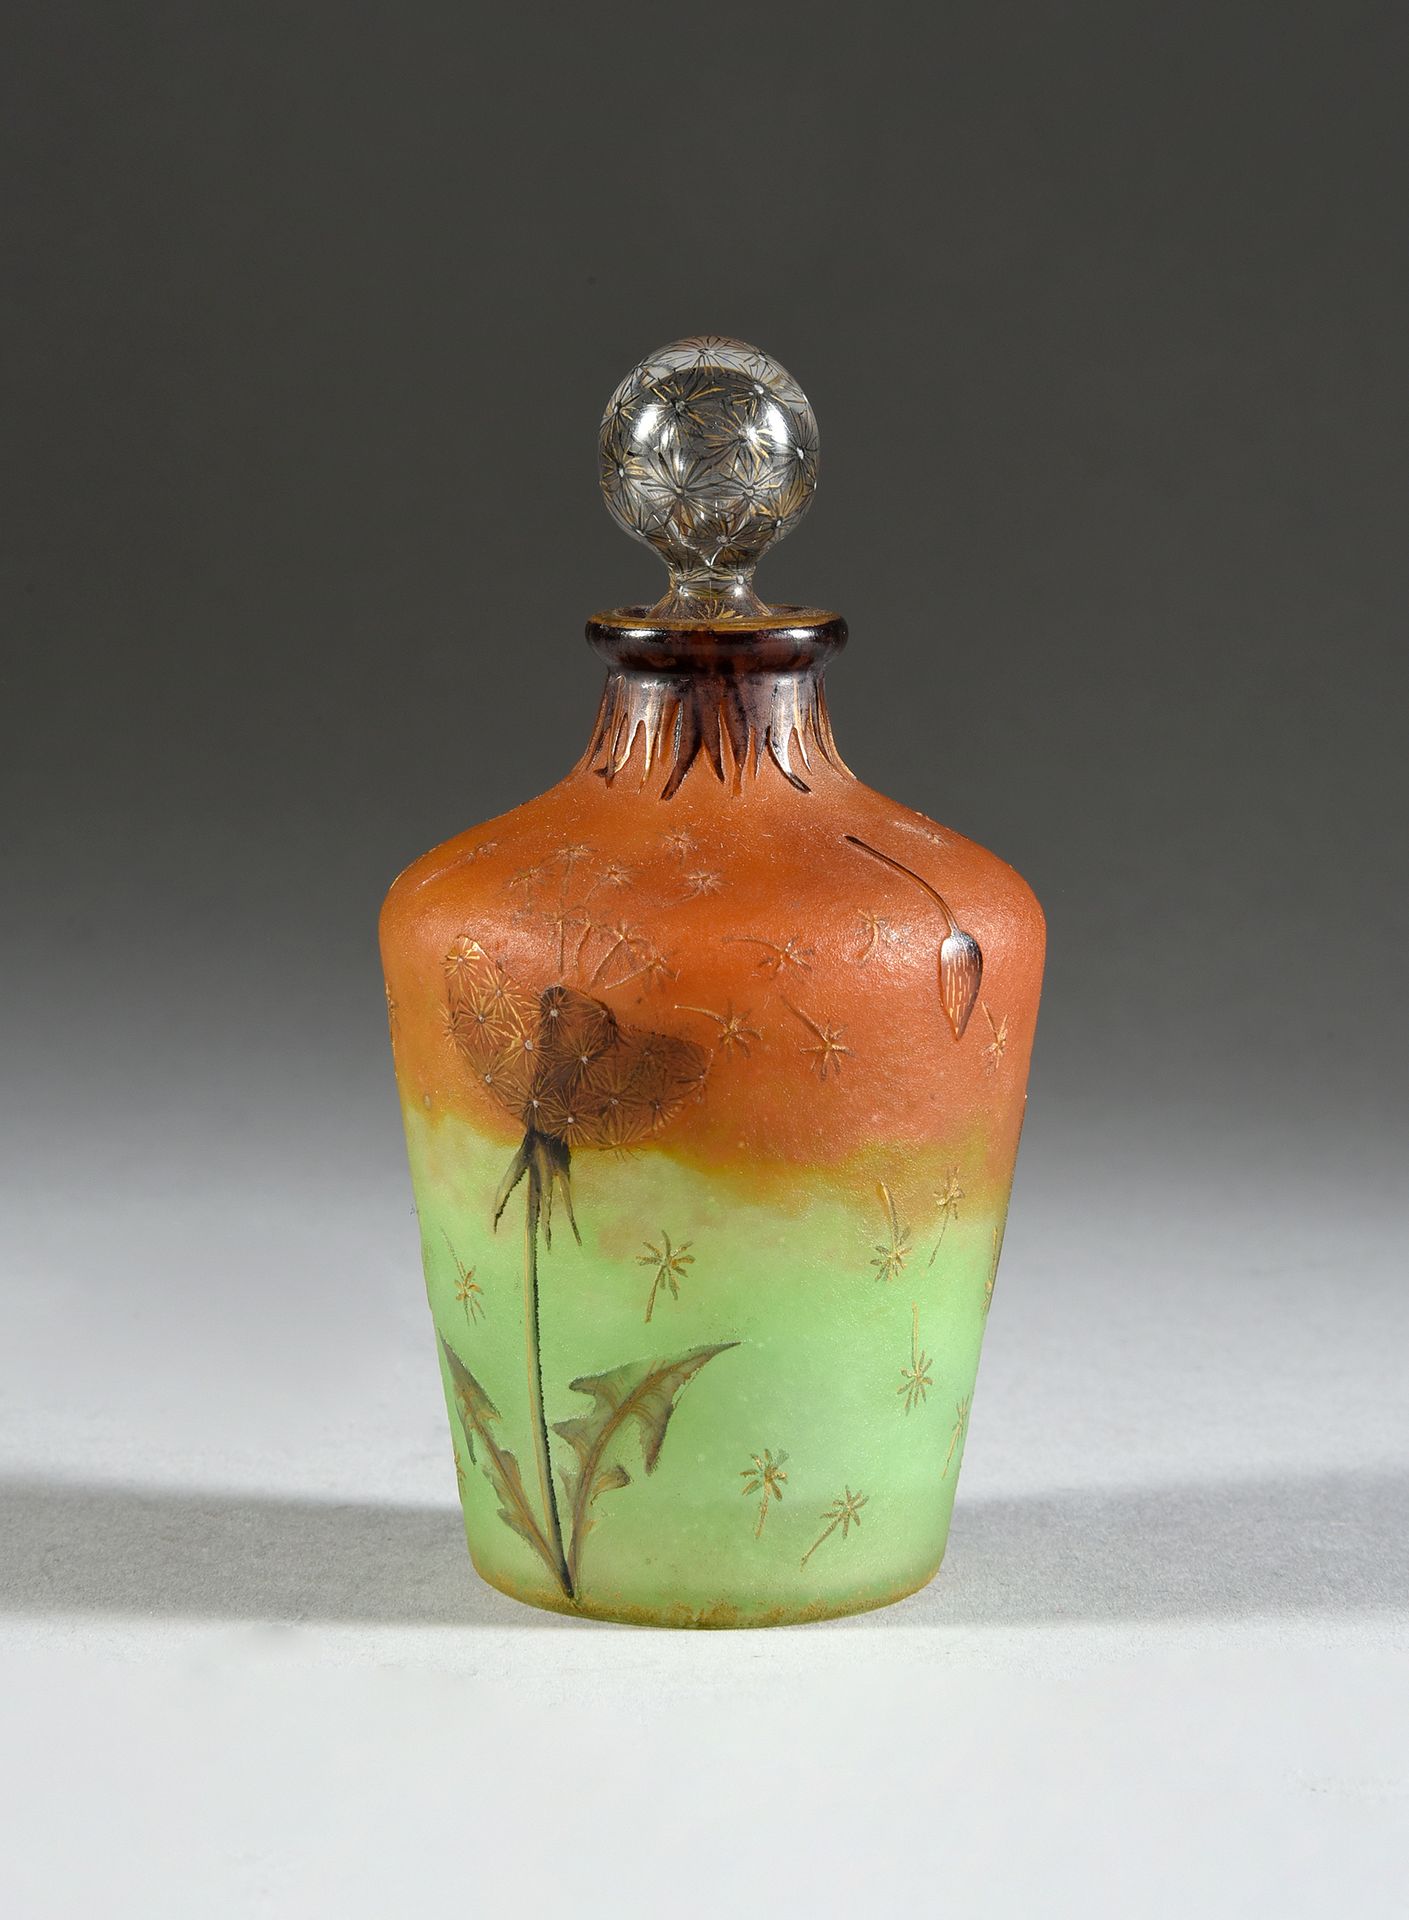 DAUM à Nancy 
蒲公英装饰的瓶子。
橙色和绿色背景的酸蚀和珐琅彩多色装饰的玻璃瓶。
蒲公英彩绘装饰的瓶塞。
高：11厘米。